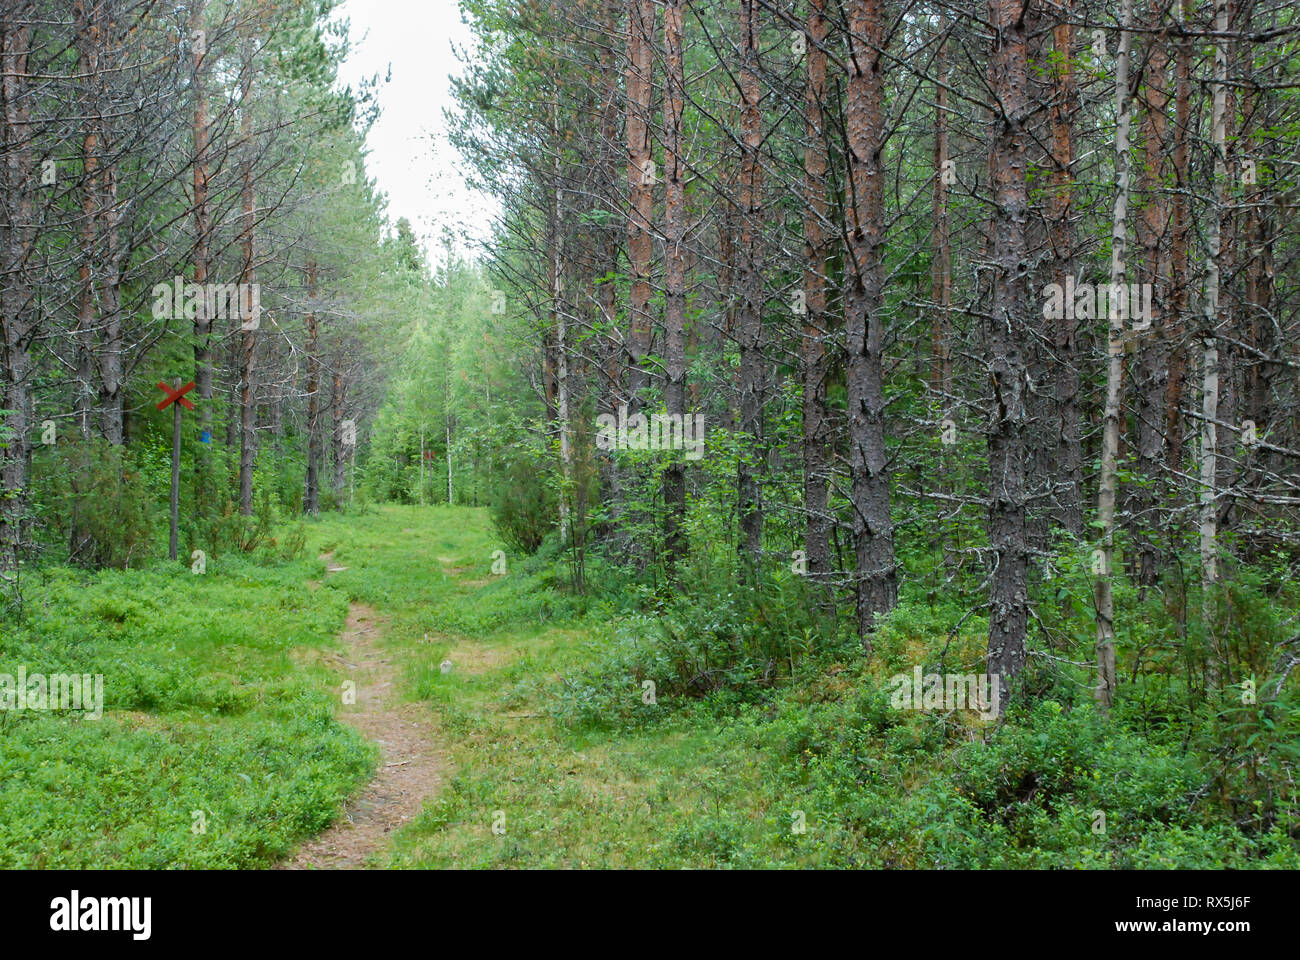 La Taiga Foresta (foresta boreale) biome, naturale paesaggio selvaggio nel nord est della Finlandia, Europa, con alberi di conifere tra cui pini e abeti rossi. Foto Stock